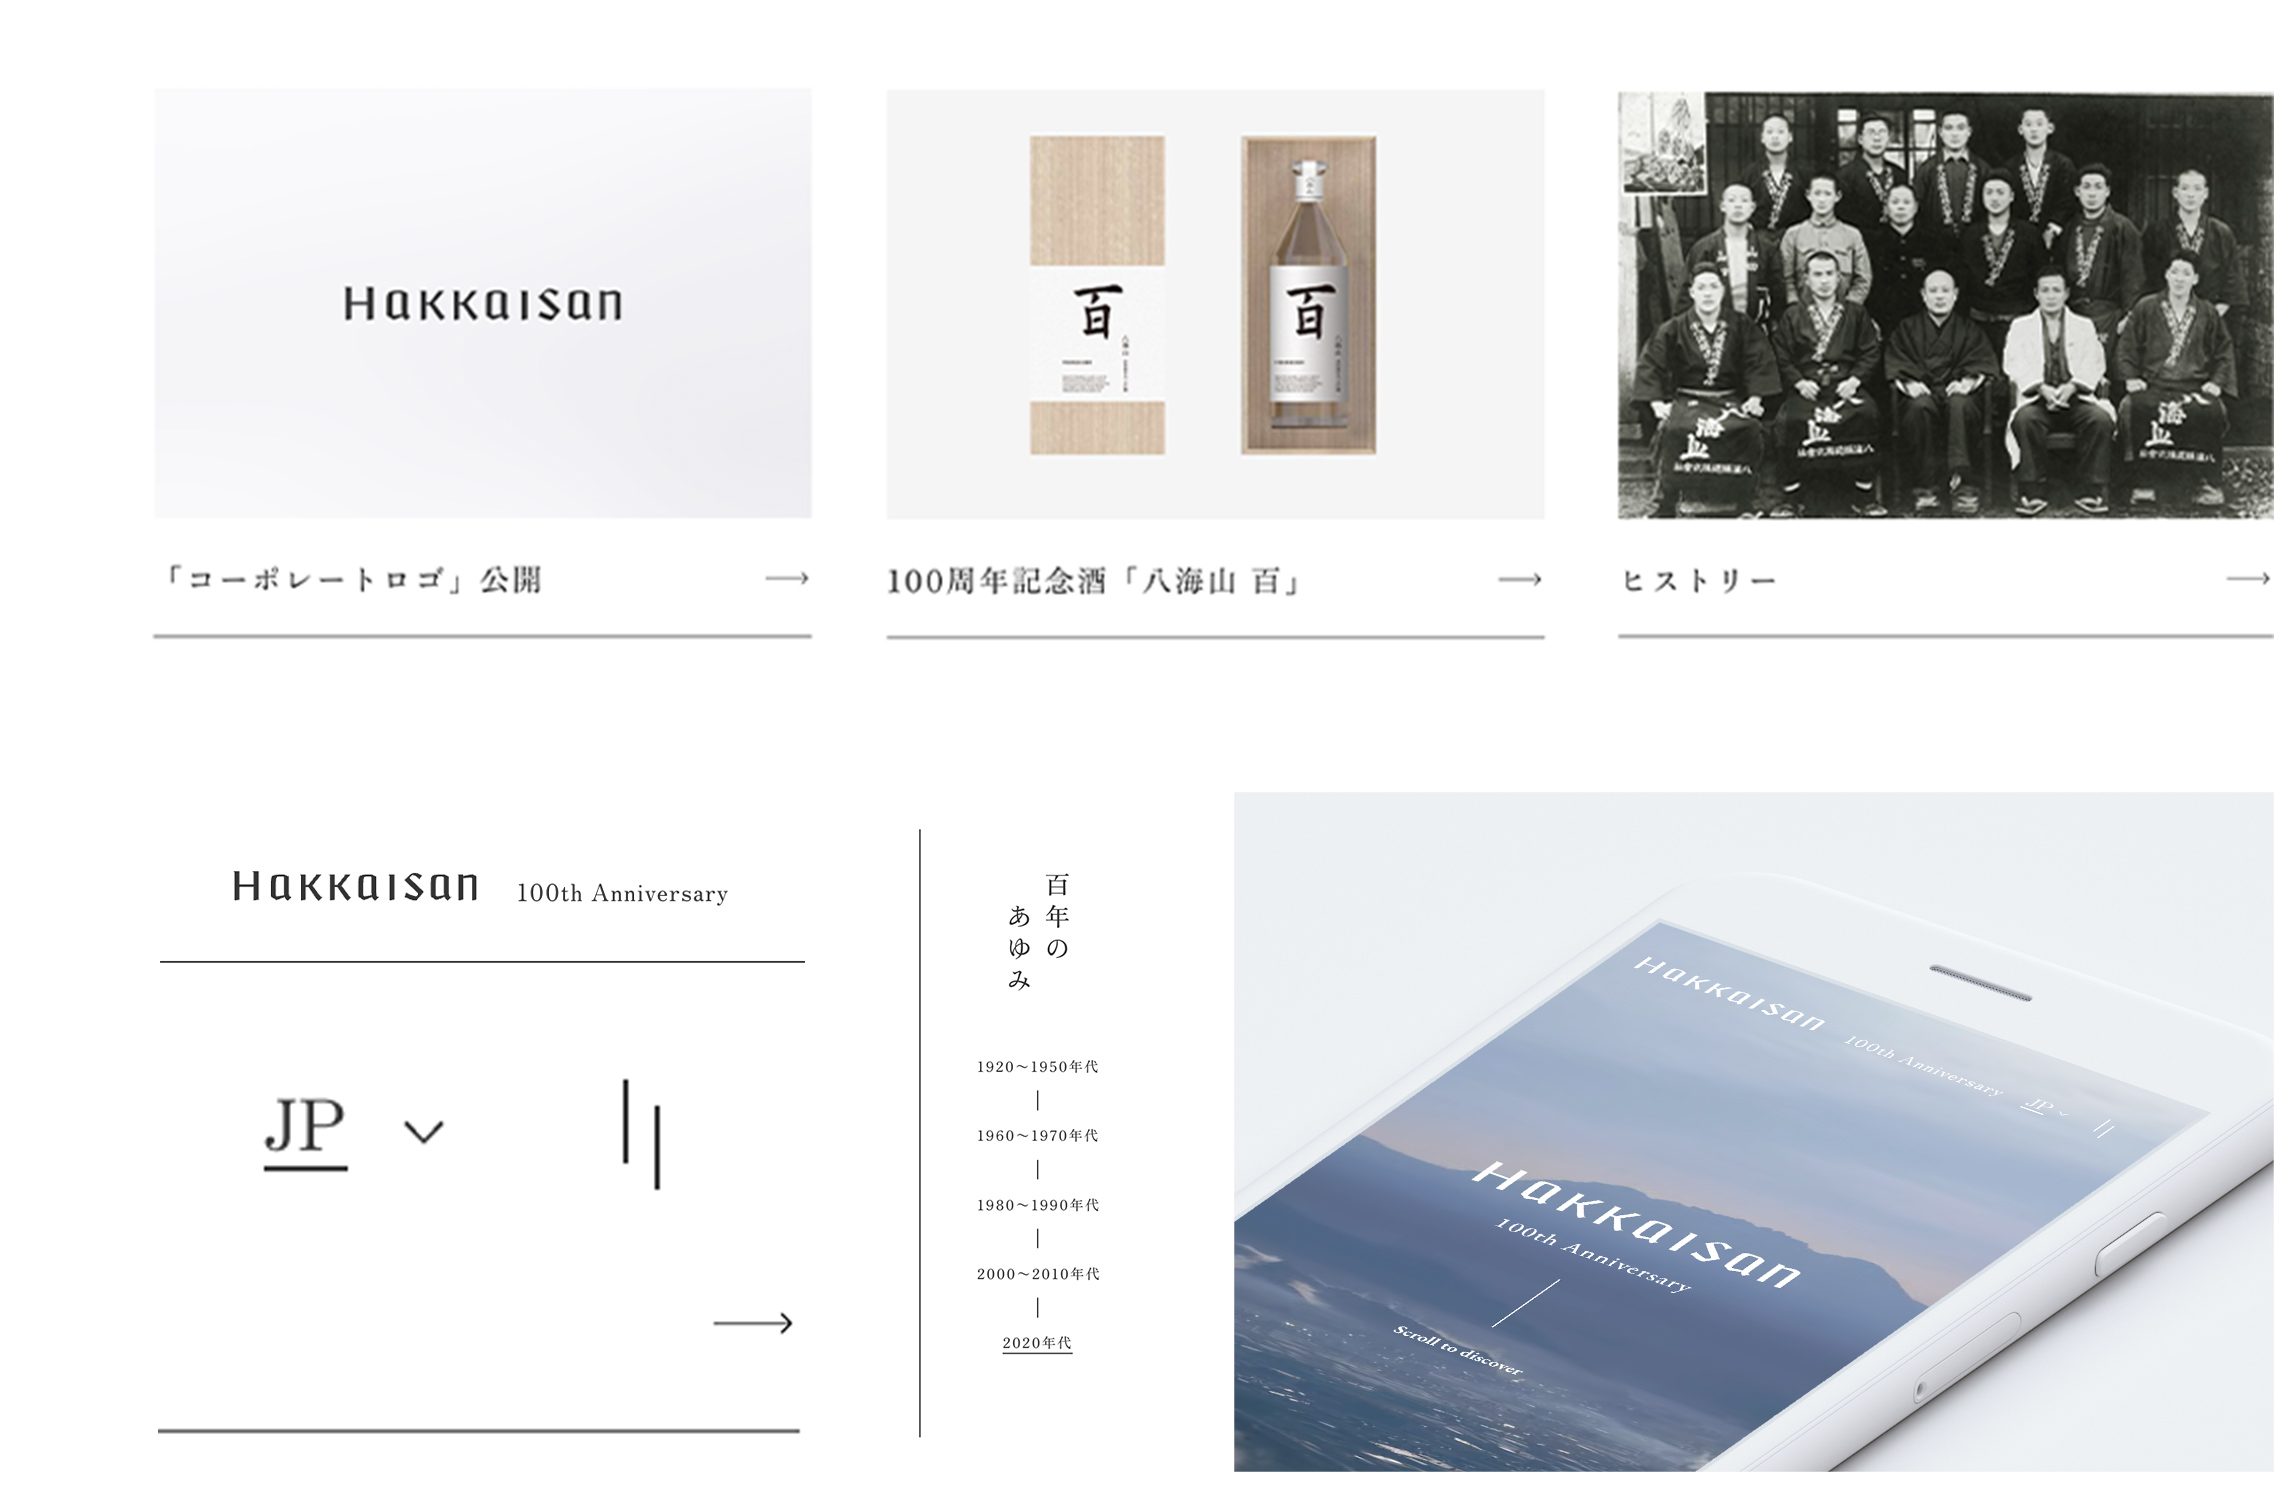 八海醸造株式会社 / 八海山 100周年記念サイト